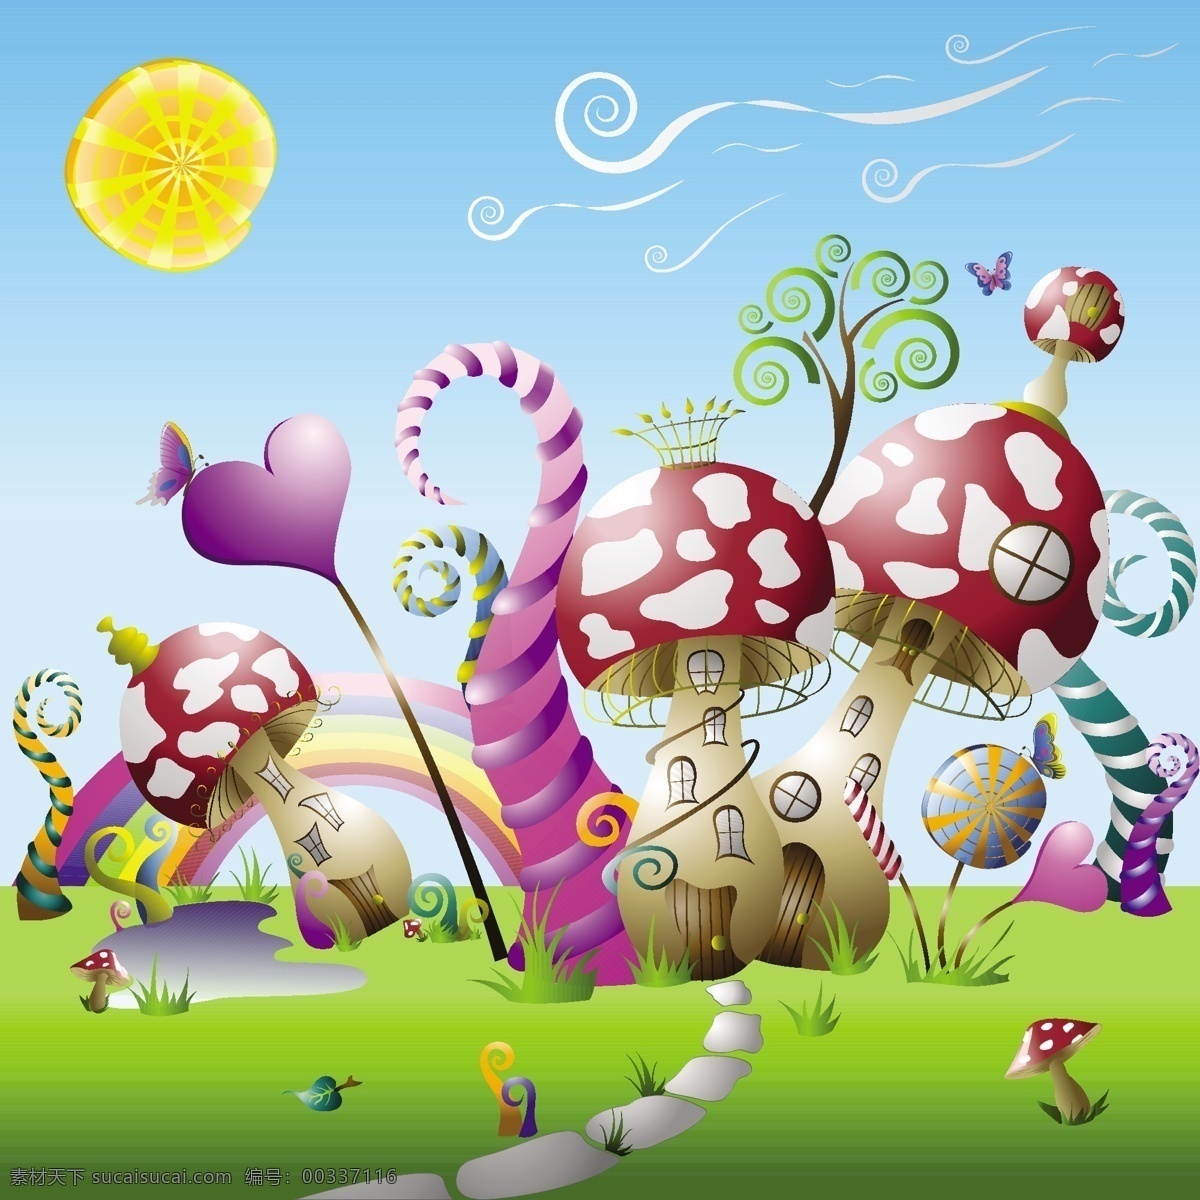 蘑菇 可爱 童话 世界 矢量 故事 向量 其他材料 白色